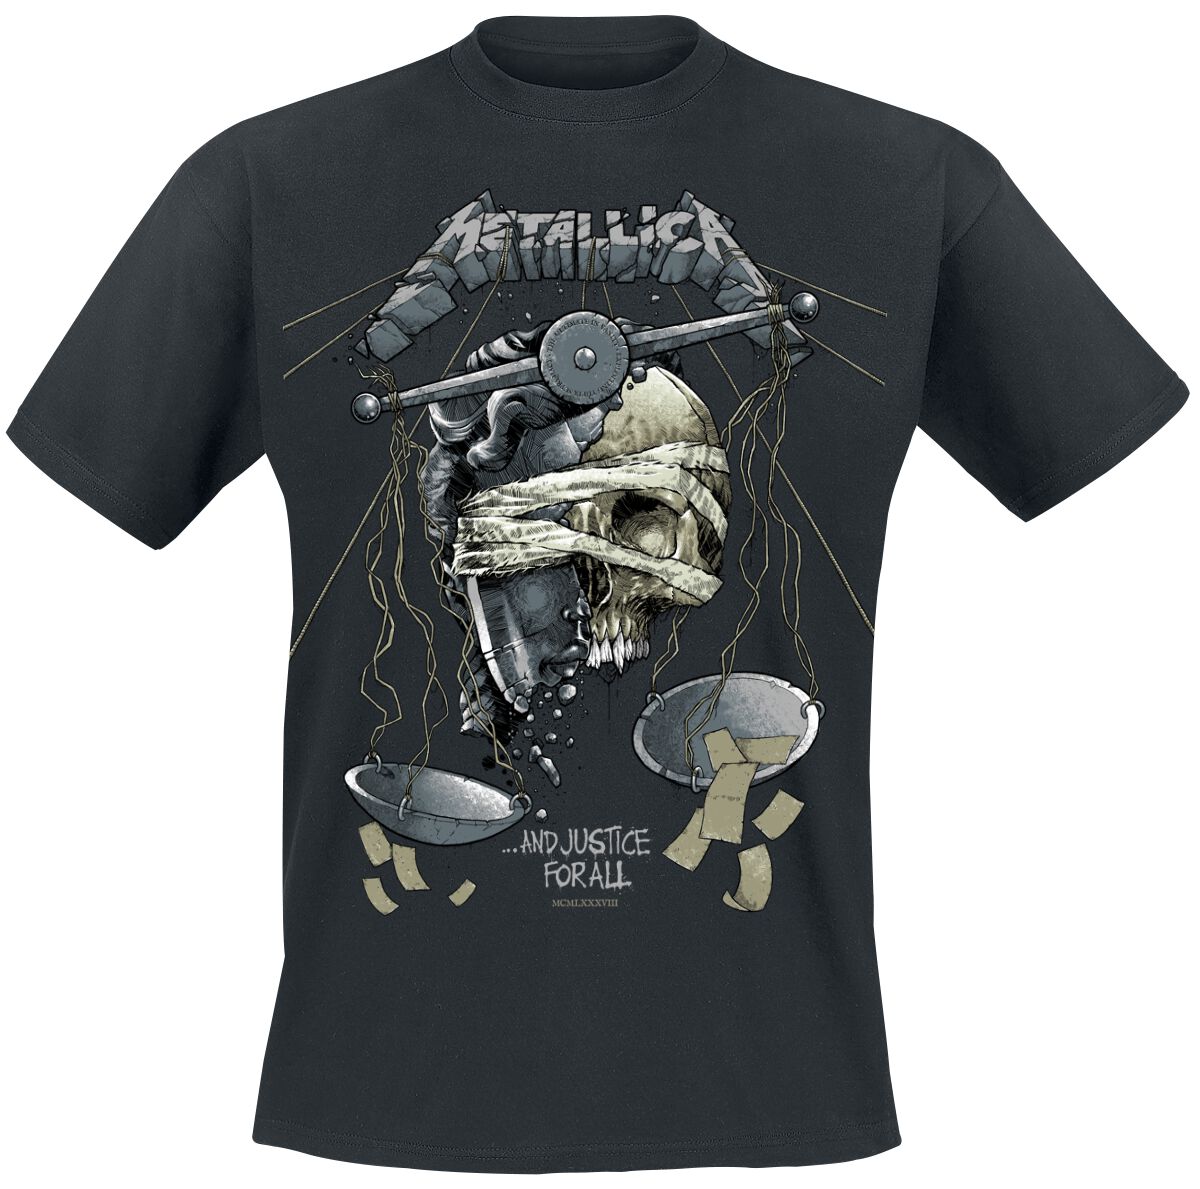 Metallica T-Shirt - LP Justice - S bis 5XL - für Männer - Größe S - schwarz  - EMP exklusives Merchandise!